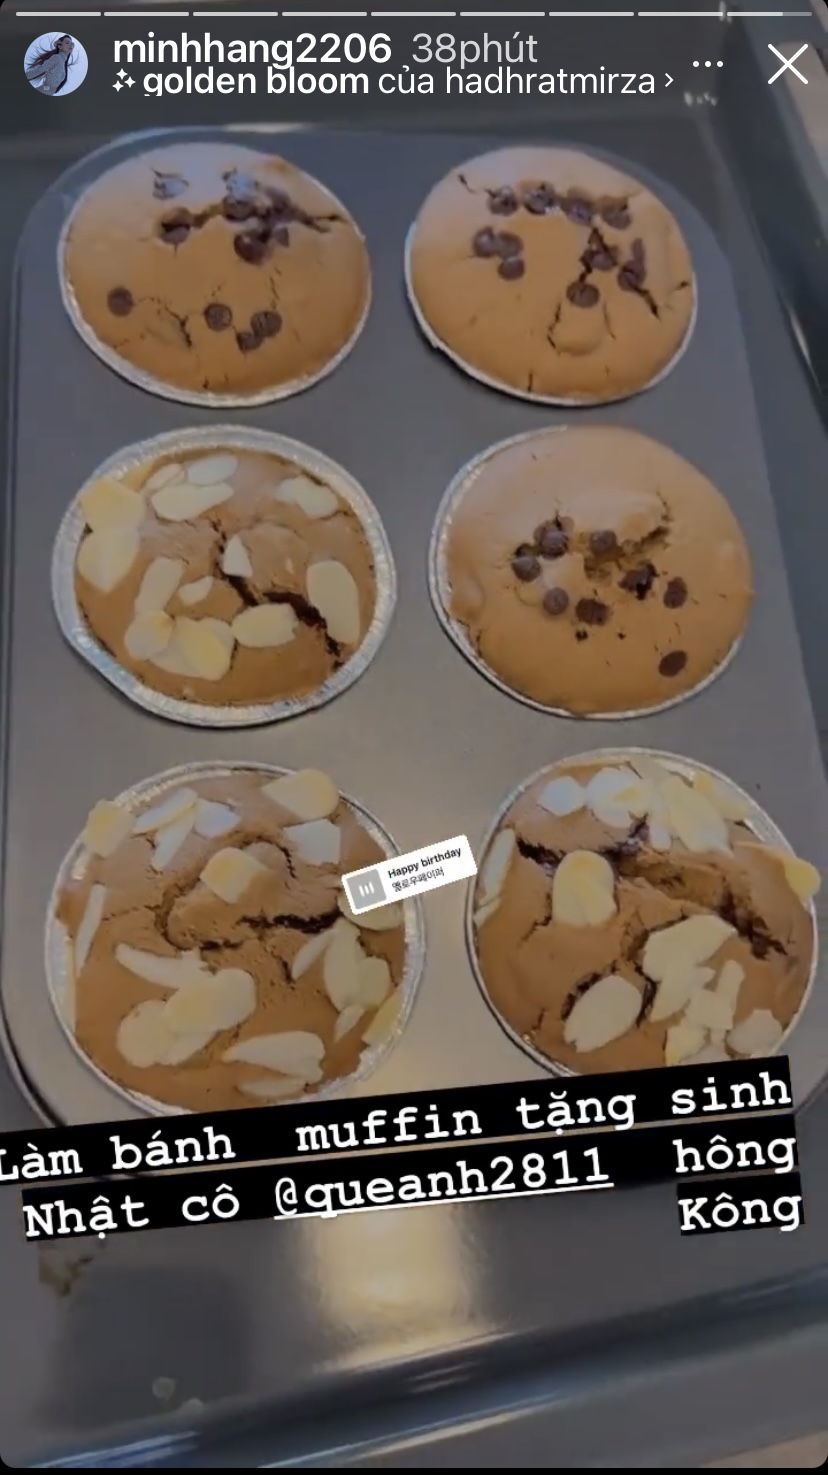 Minh Hằng trổ tài làm bánh muffin để tặng sinh nhật bạn.